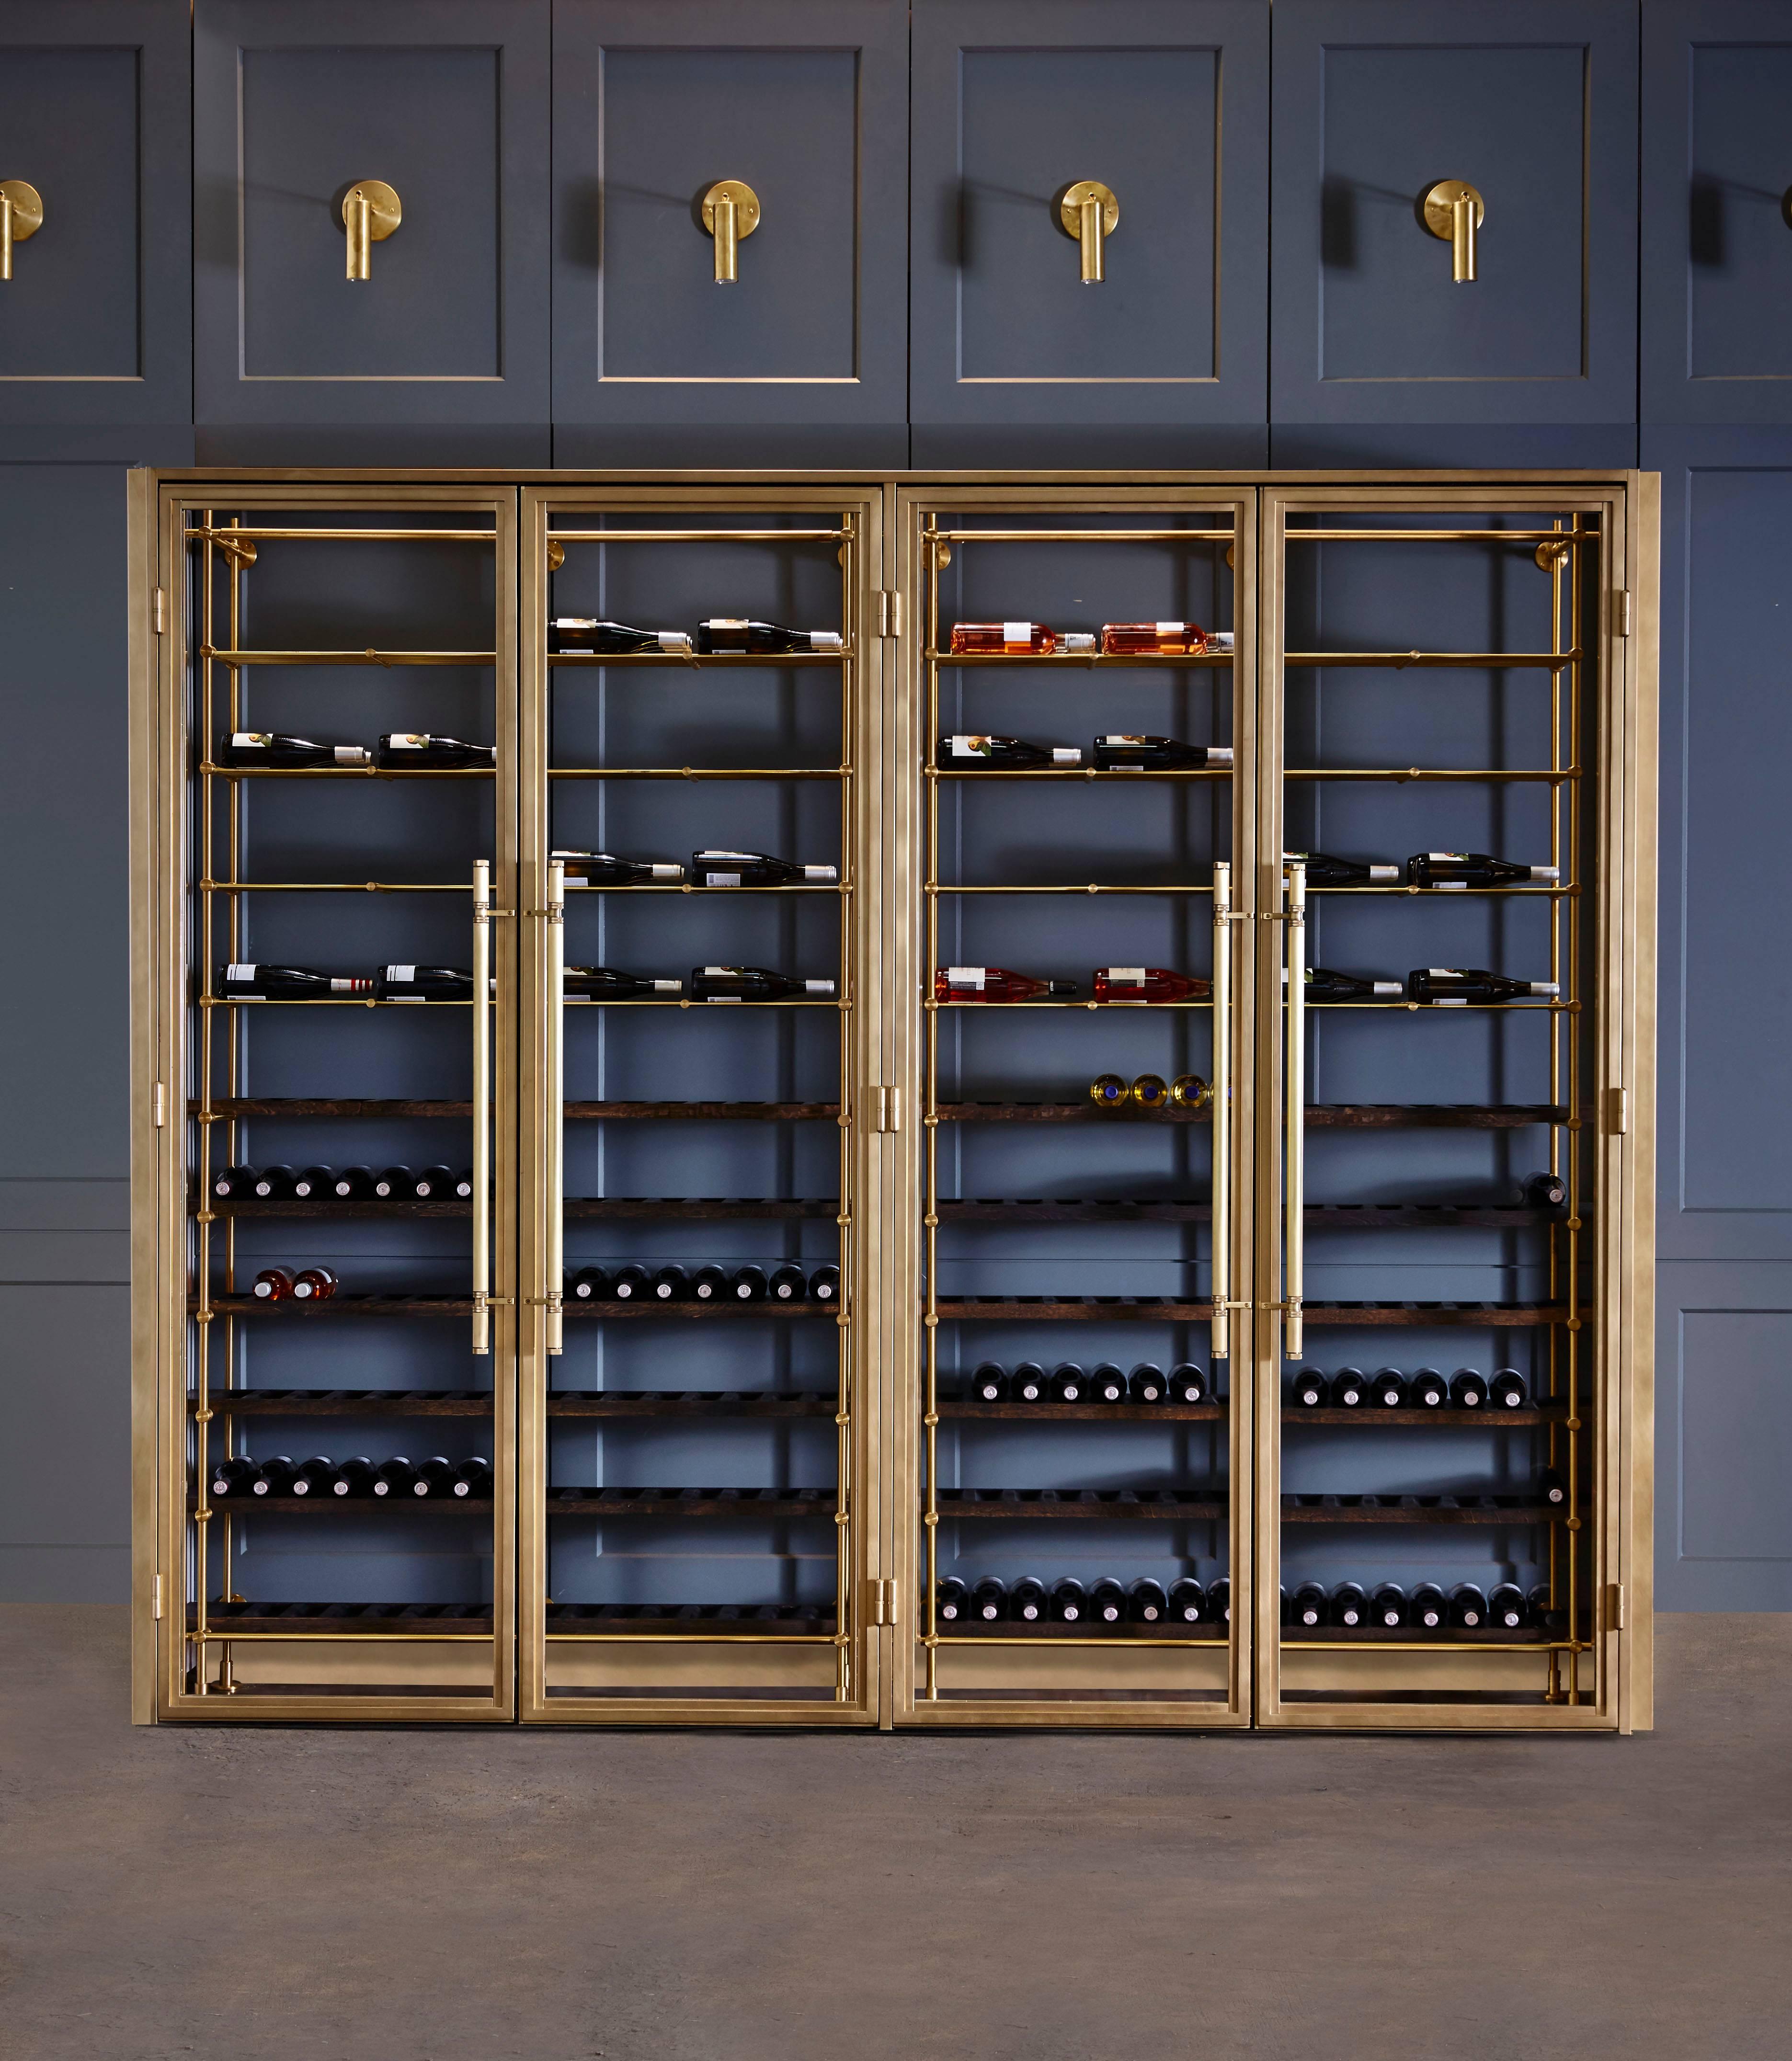 La salle à vin en laiton d'Amuneal est construite en utilisant les détails mécaniques propres de notre système de panneaux Frankford. Les pièces métalliques sont toutes fabriquées en laiton massif avec une finition légèrement patinée. Chaque cadre